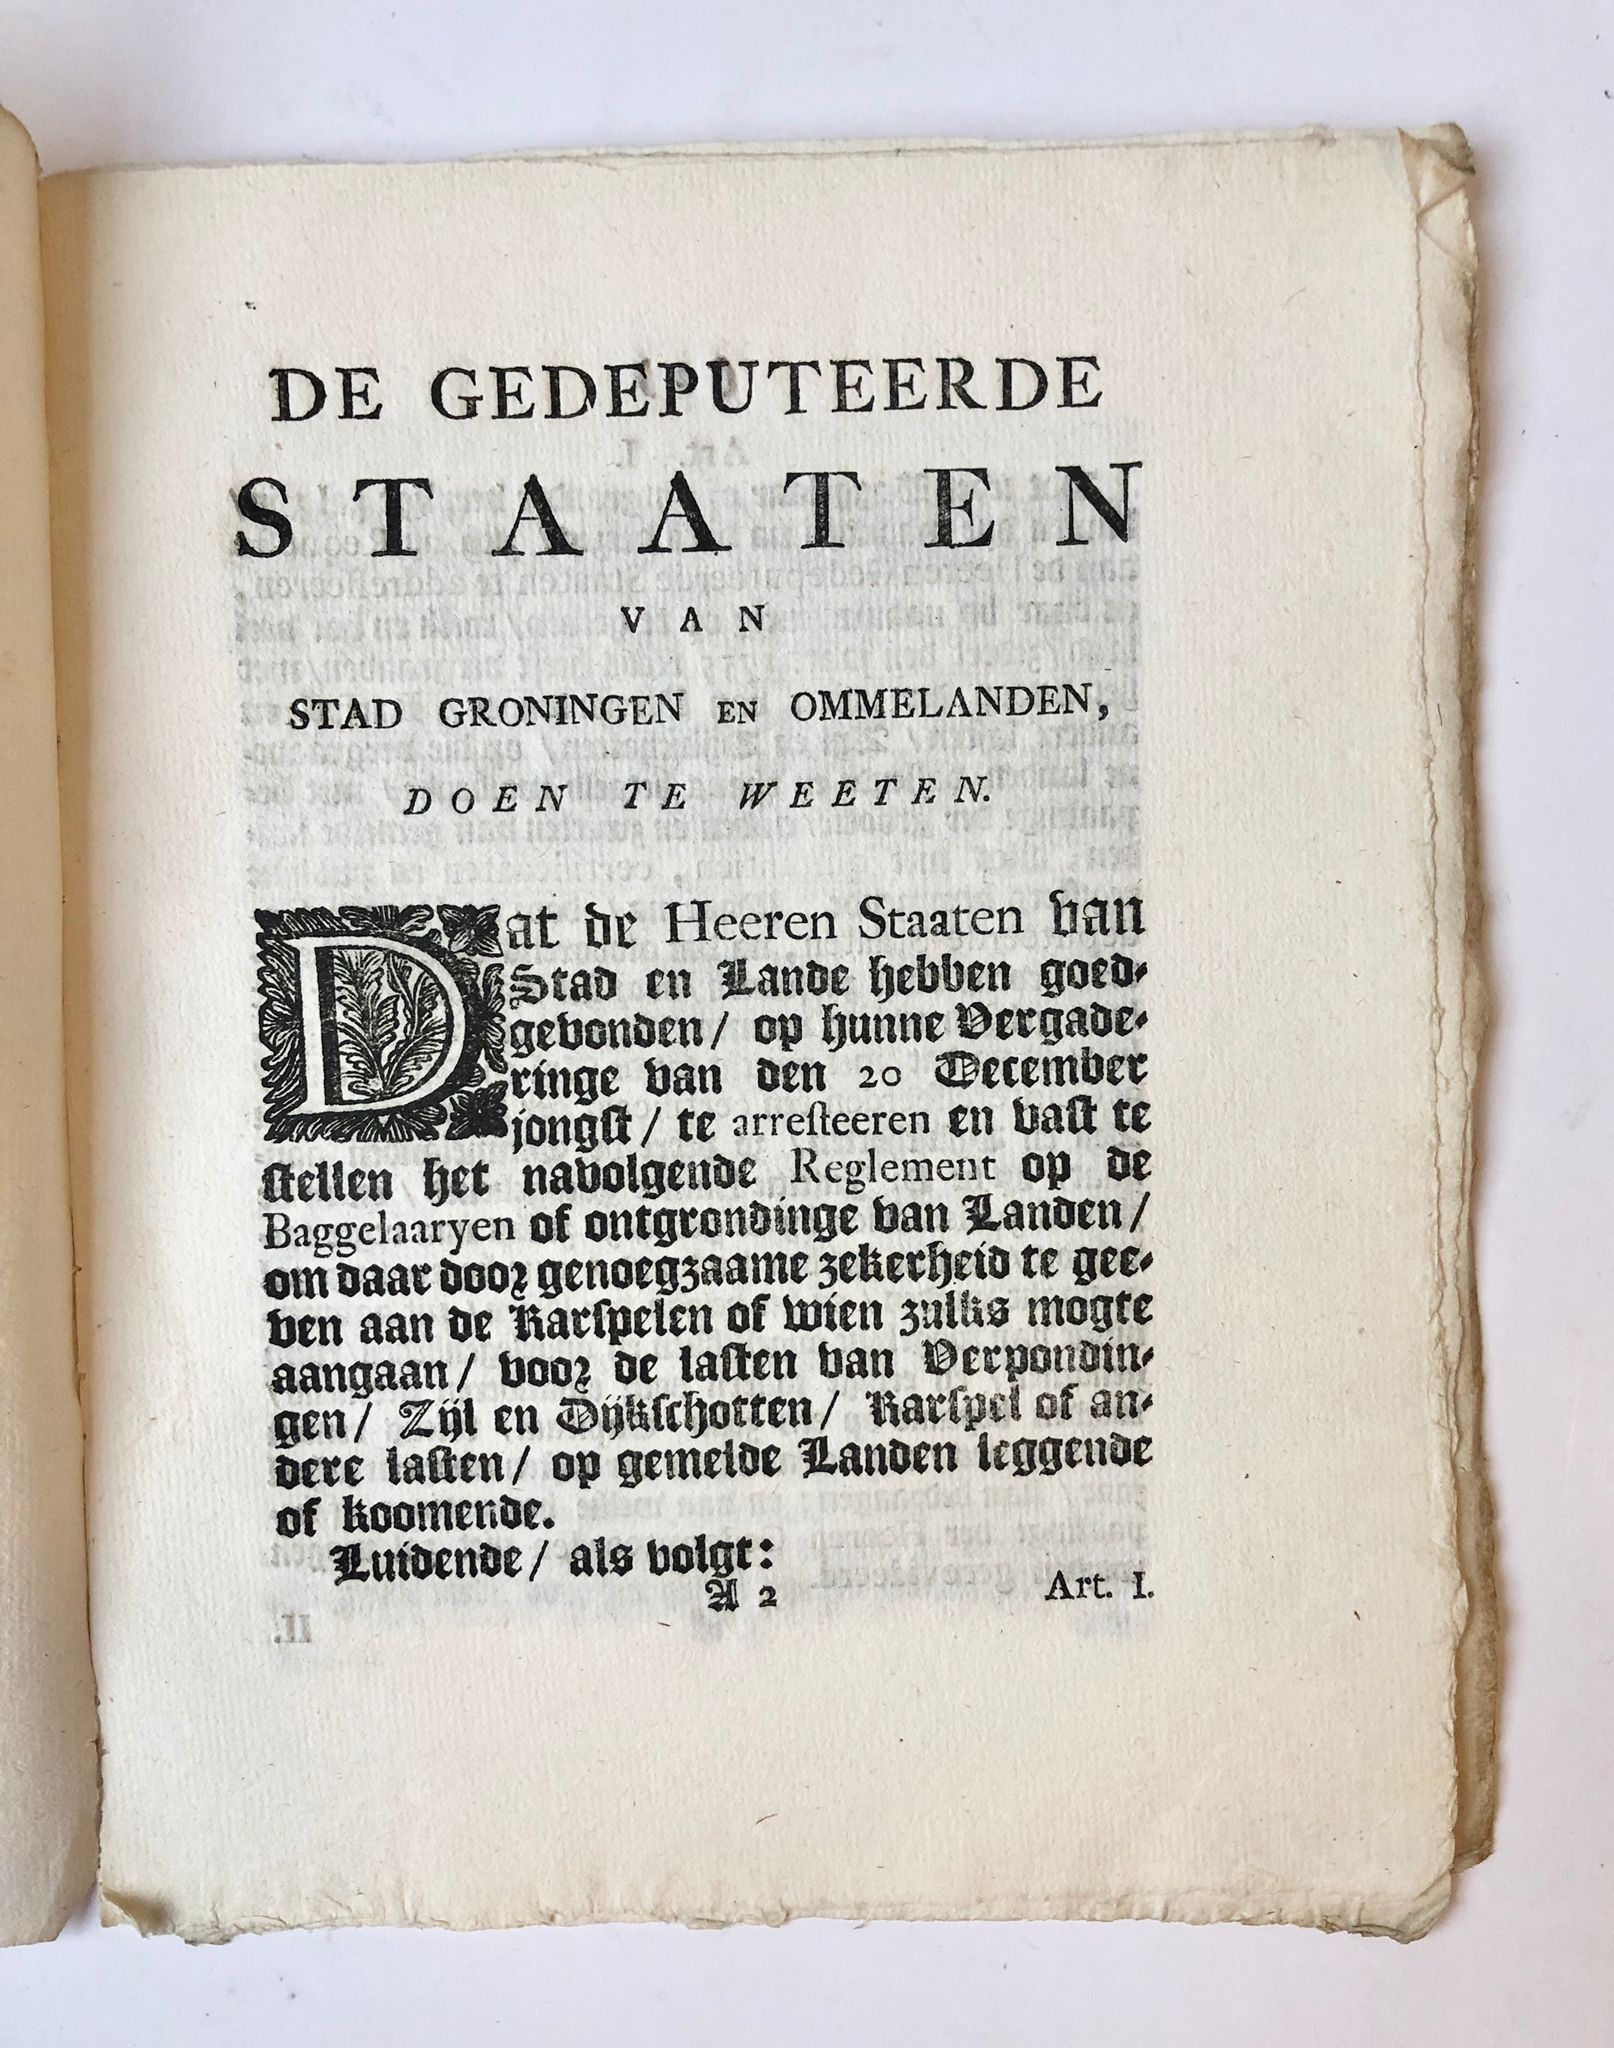 [Groningen, Baggeren, dredging 1772] Reglement op de Baggelaaryen of ontgrondige van Landen in de Provincie van Stad en Lande, by Jacob Bolt, Te Groningen, 1772, No. 48, 6 pp.